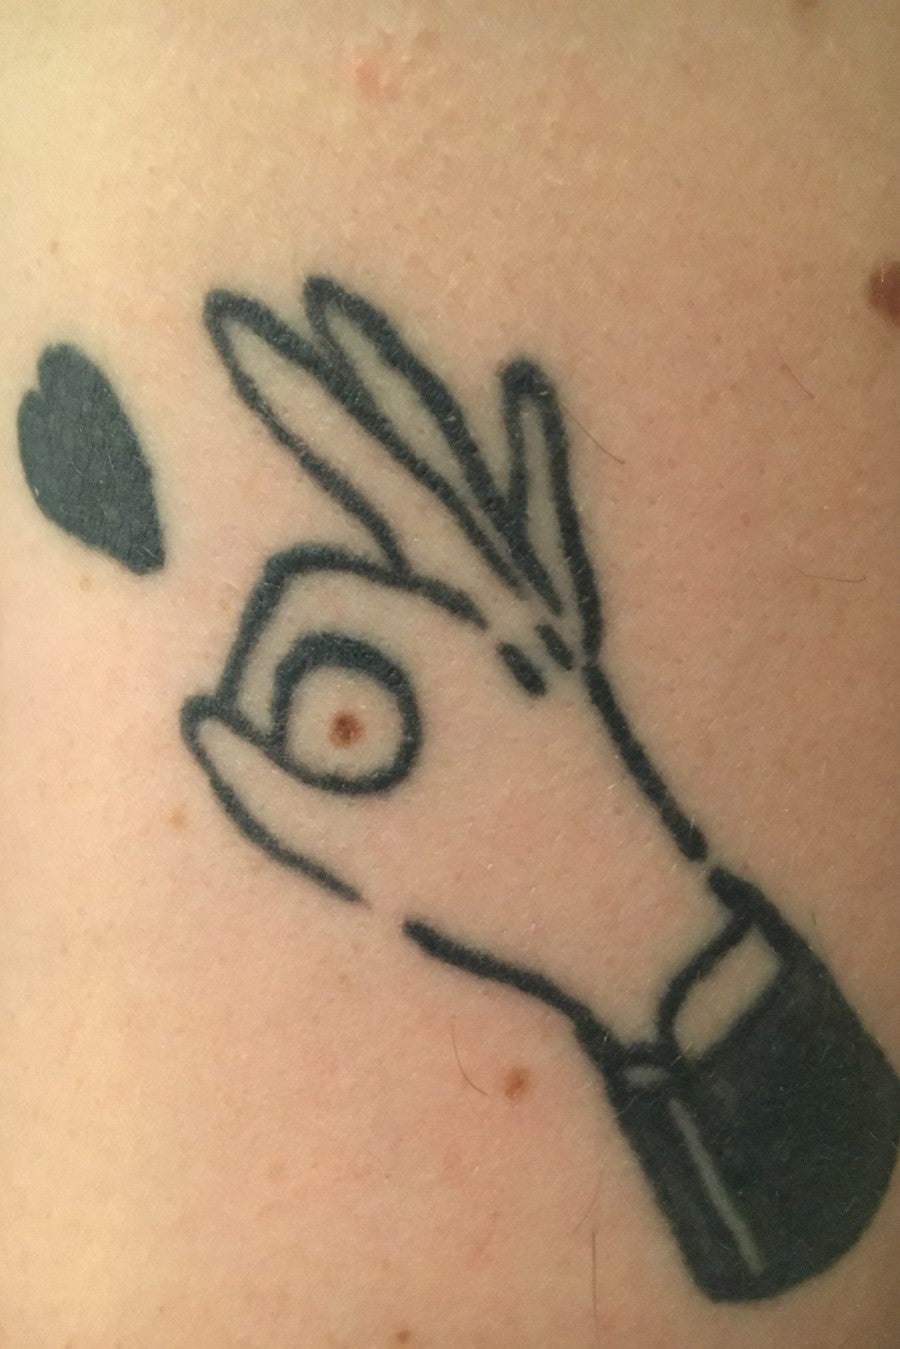 Photo de tatouage, image de recherche de Chloé Quenum, 2018. Courtesy Chloé Quenum.